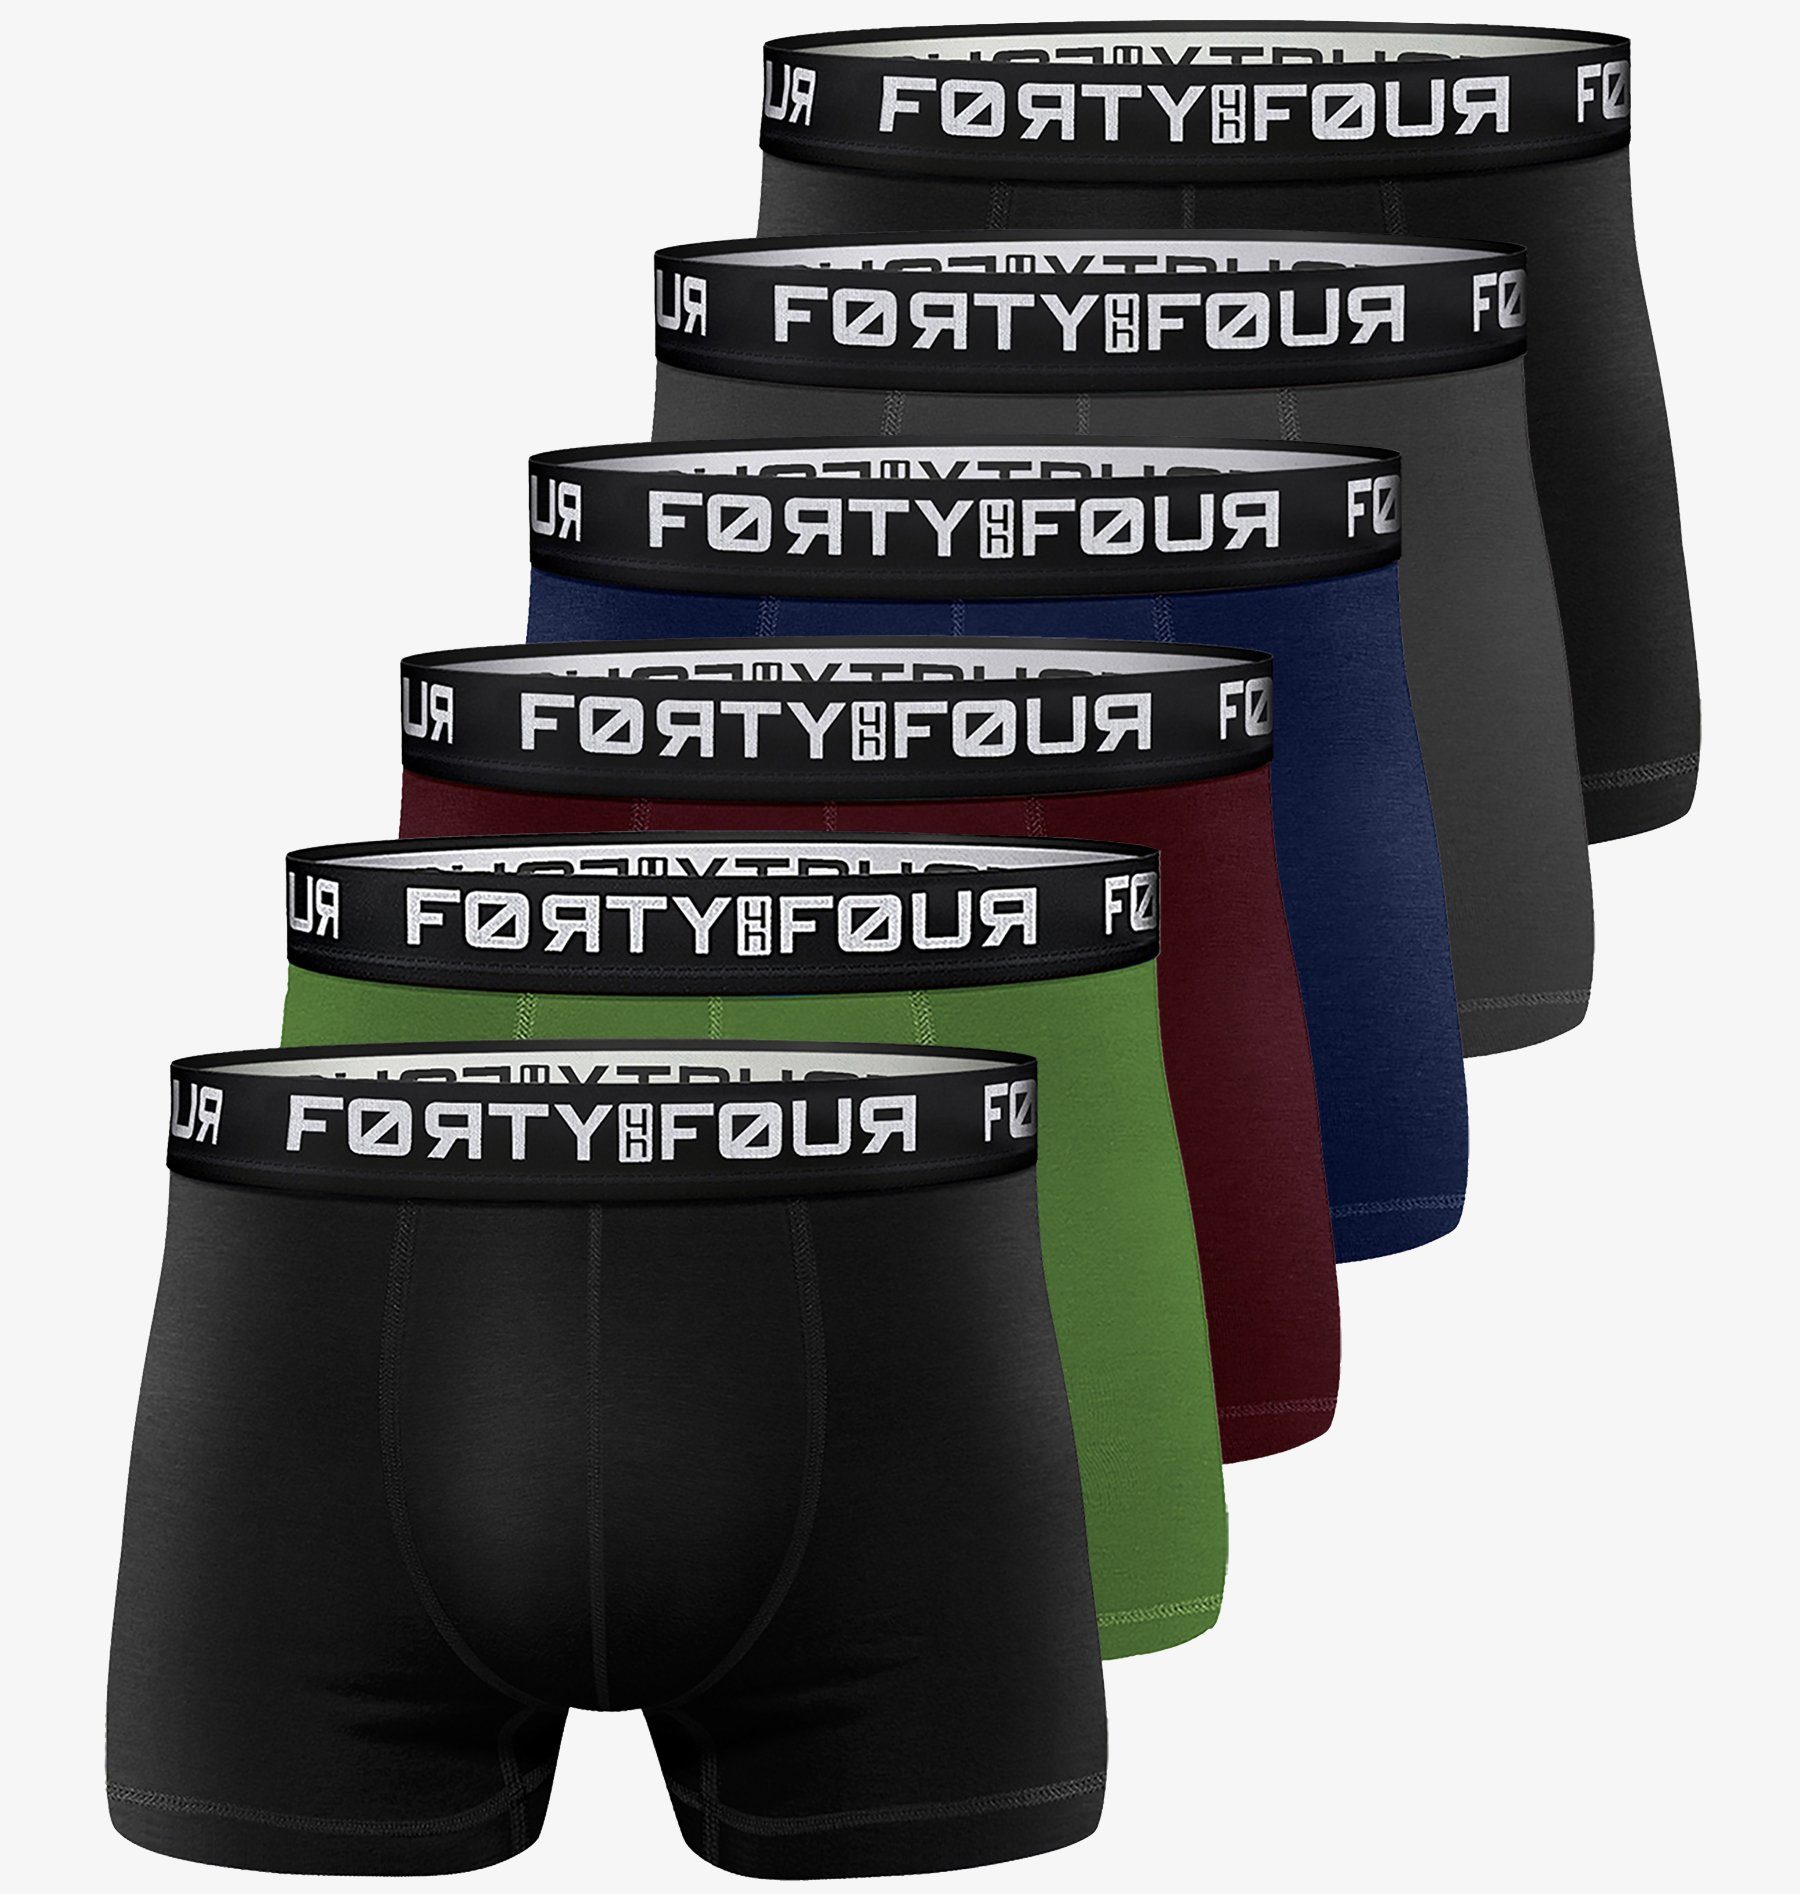 FortyFour Boxershorts Herren 6 Stück S-7XL Männer Unterhosen